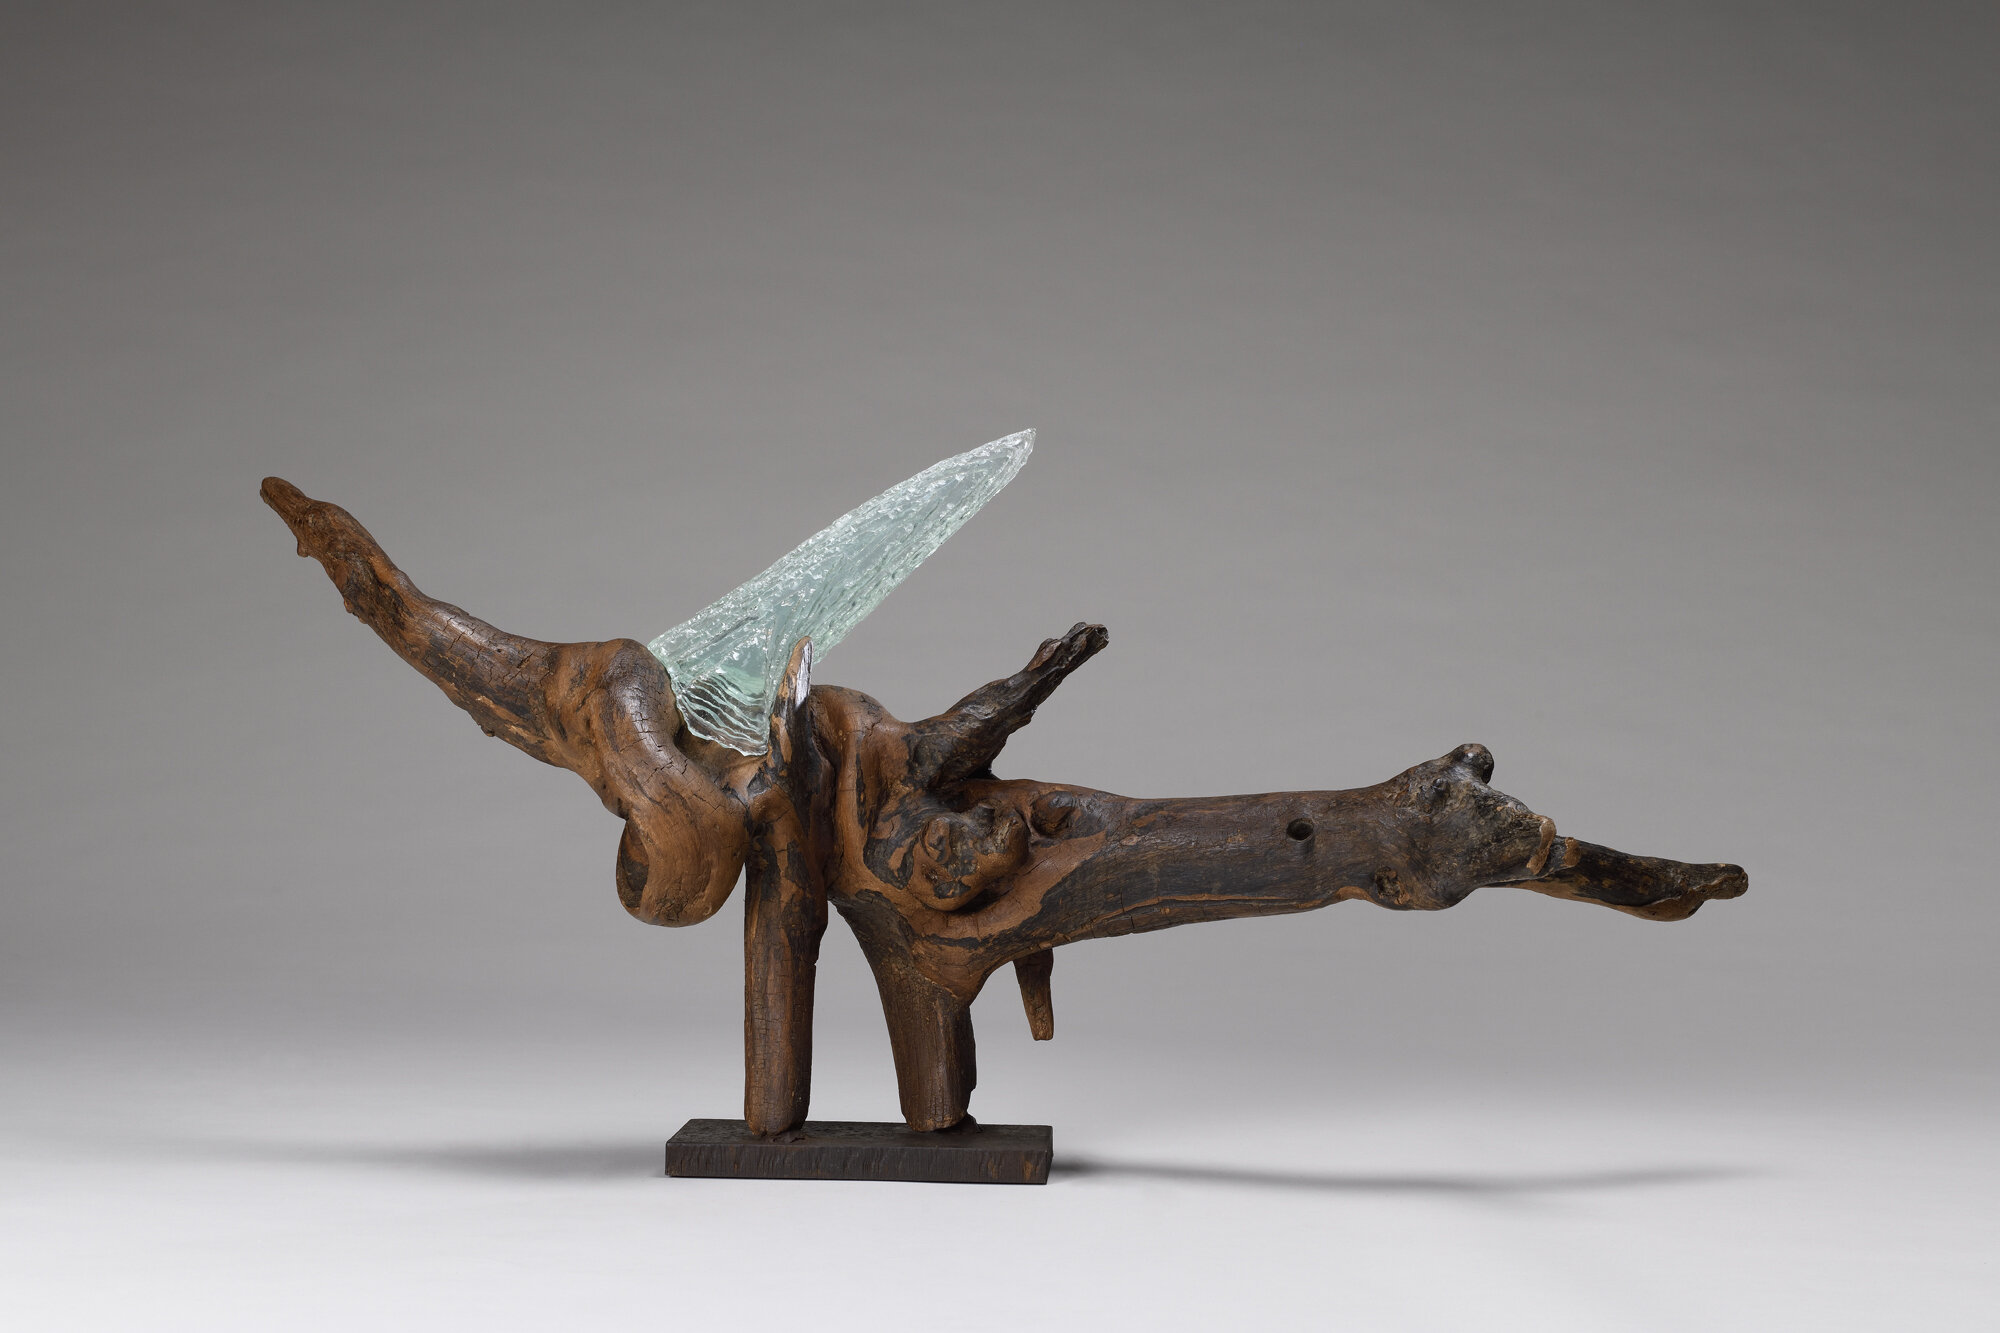 Mirmandean recto sculpture contemporaine abstraite en bois, métal et verre conçue par Bernard Froment